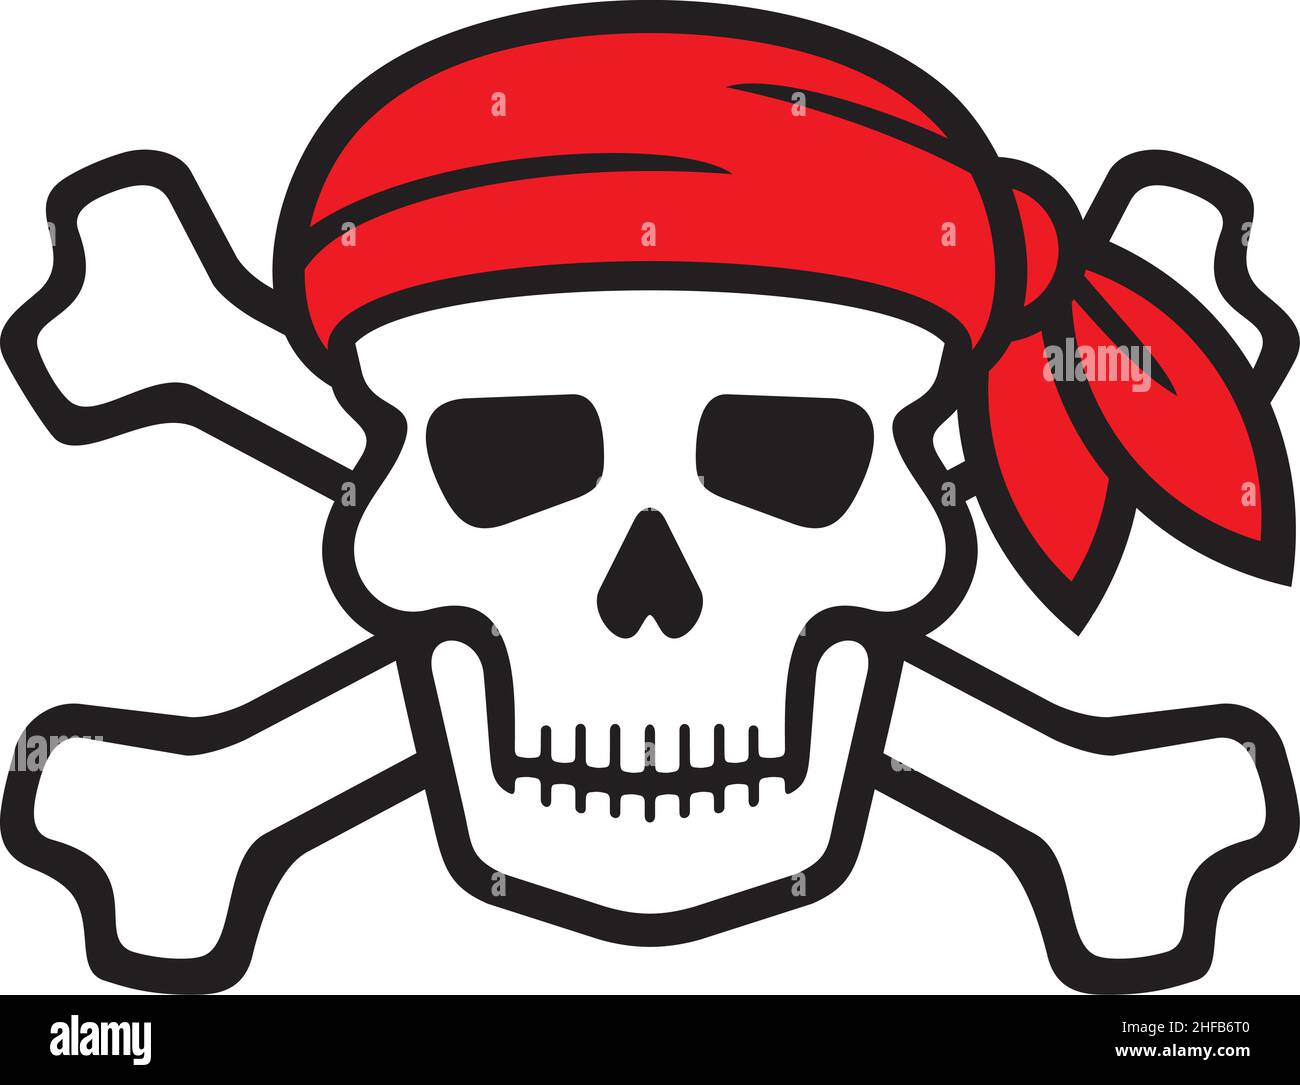 Aislado Parche En El Ojo. Accesorio Pirata. Cráneo Jolly Roger  Ilustraciones svg, vectoriales, clip art vectorizado libre de derechos.  Image 66671381